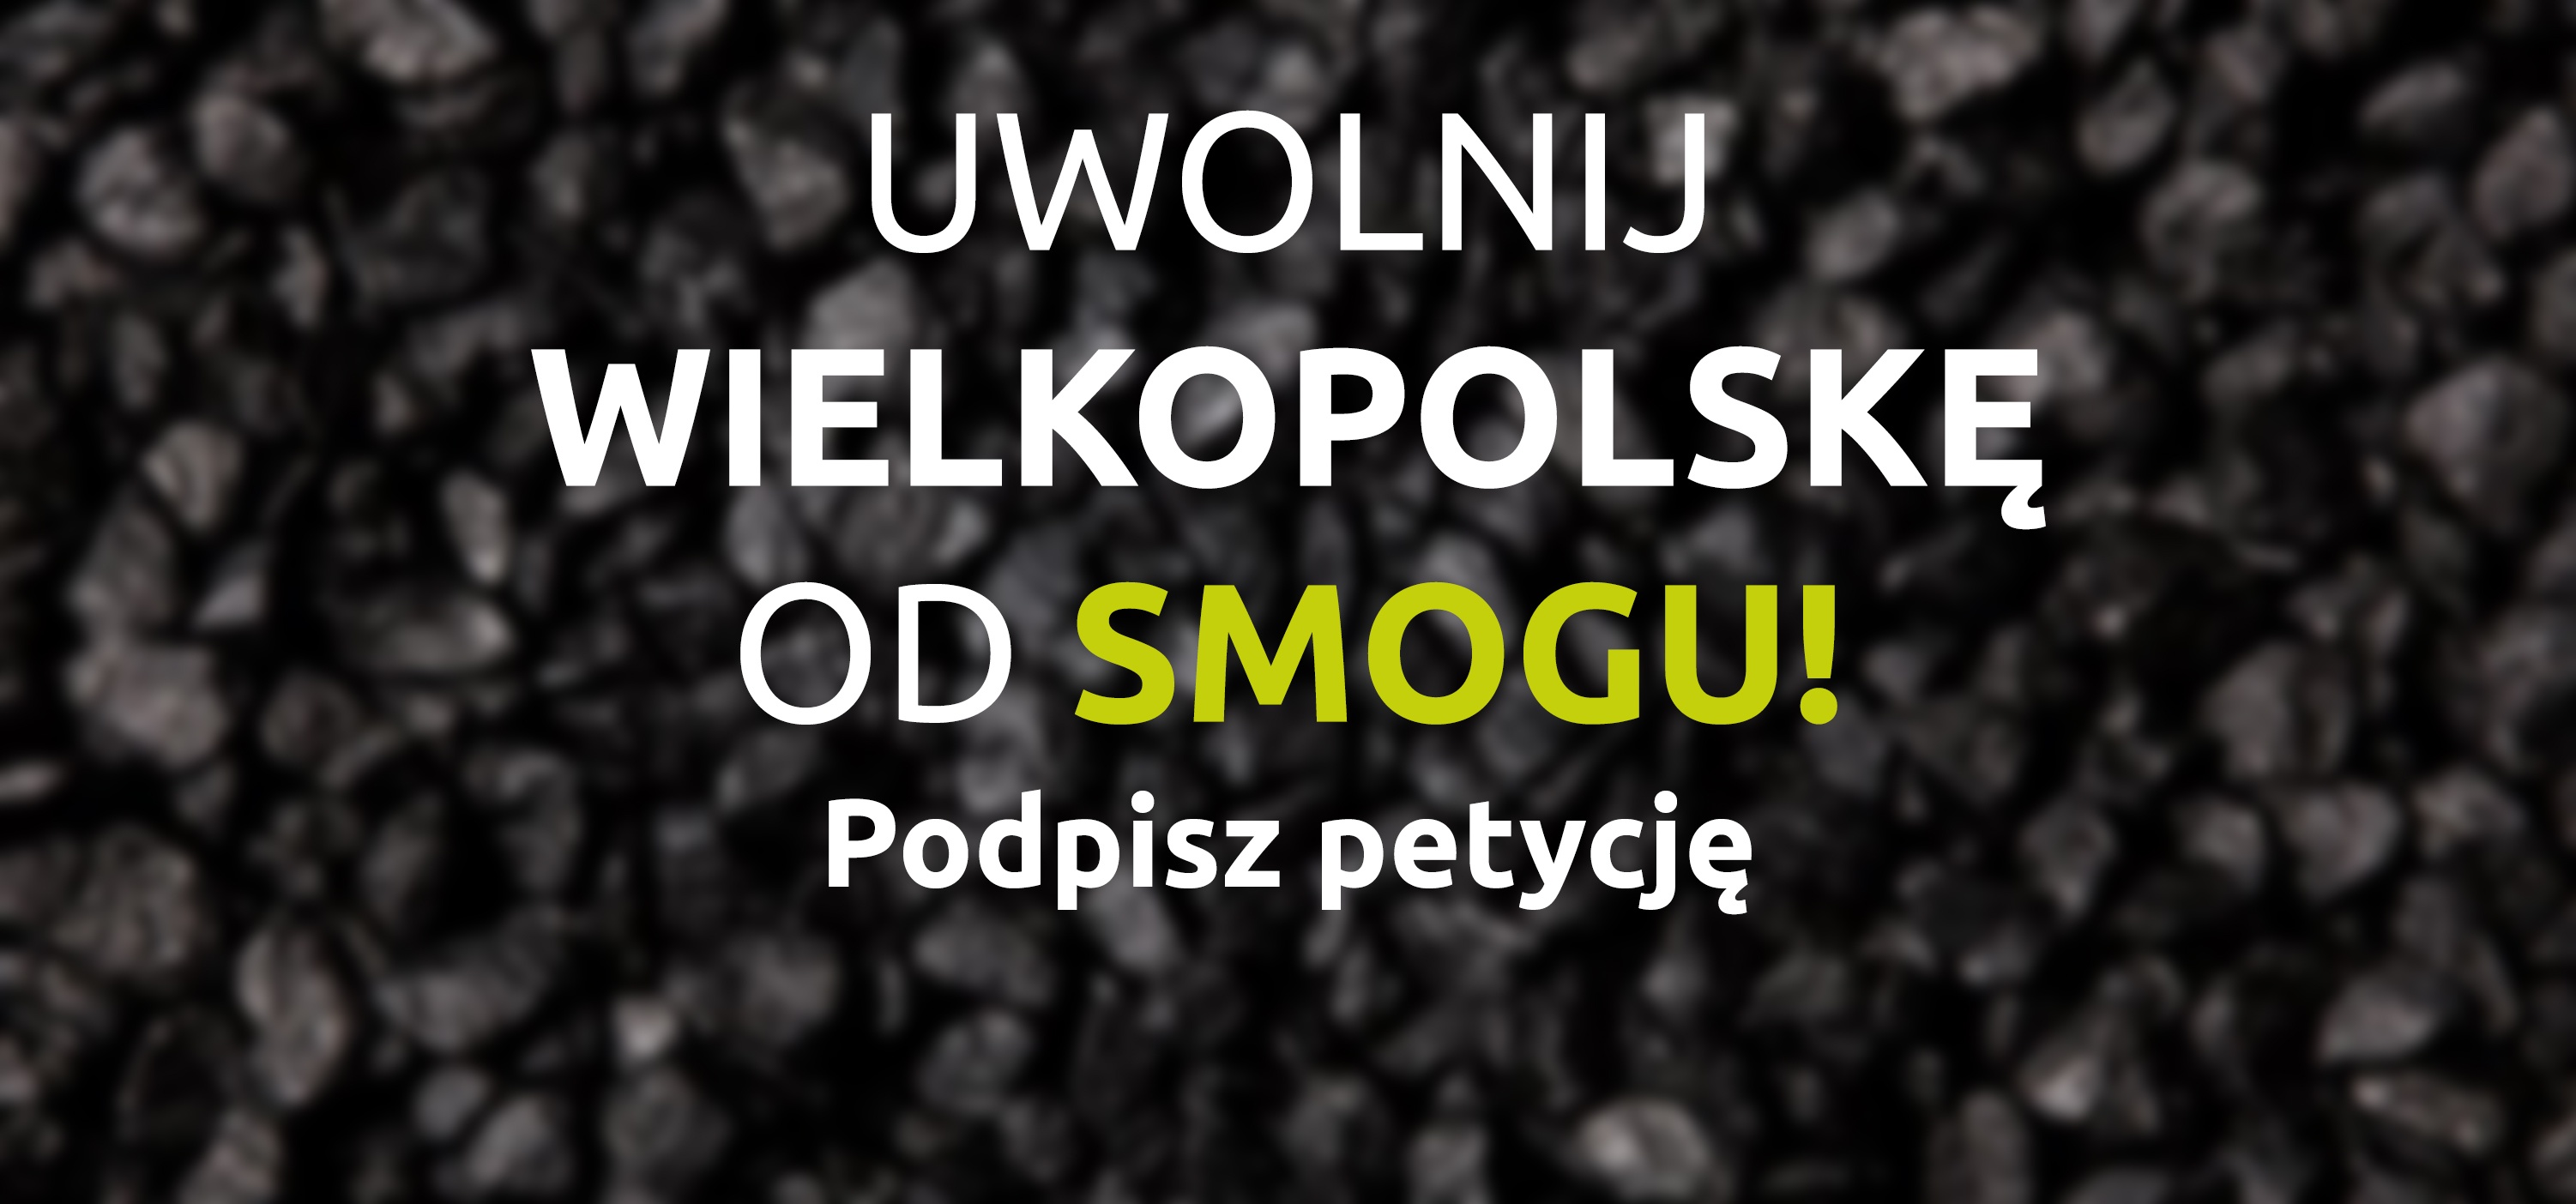 Petycja do Sejmiku Województwa Wielkopolskiego